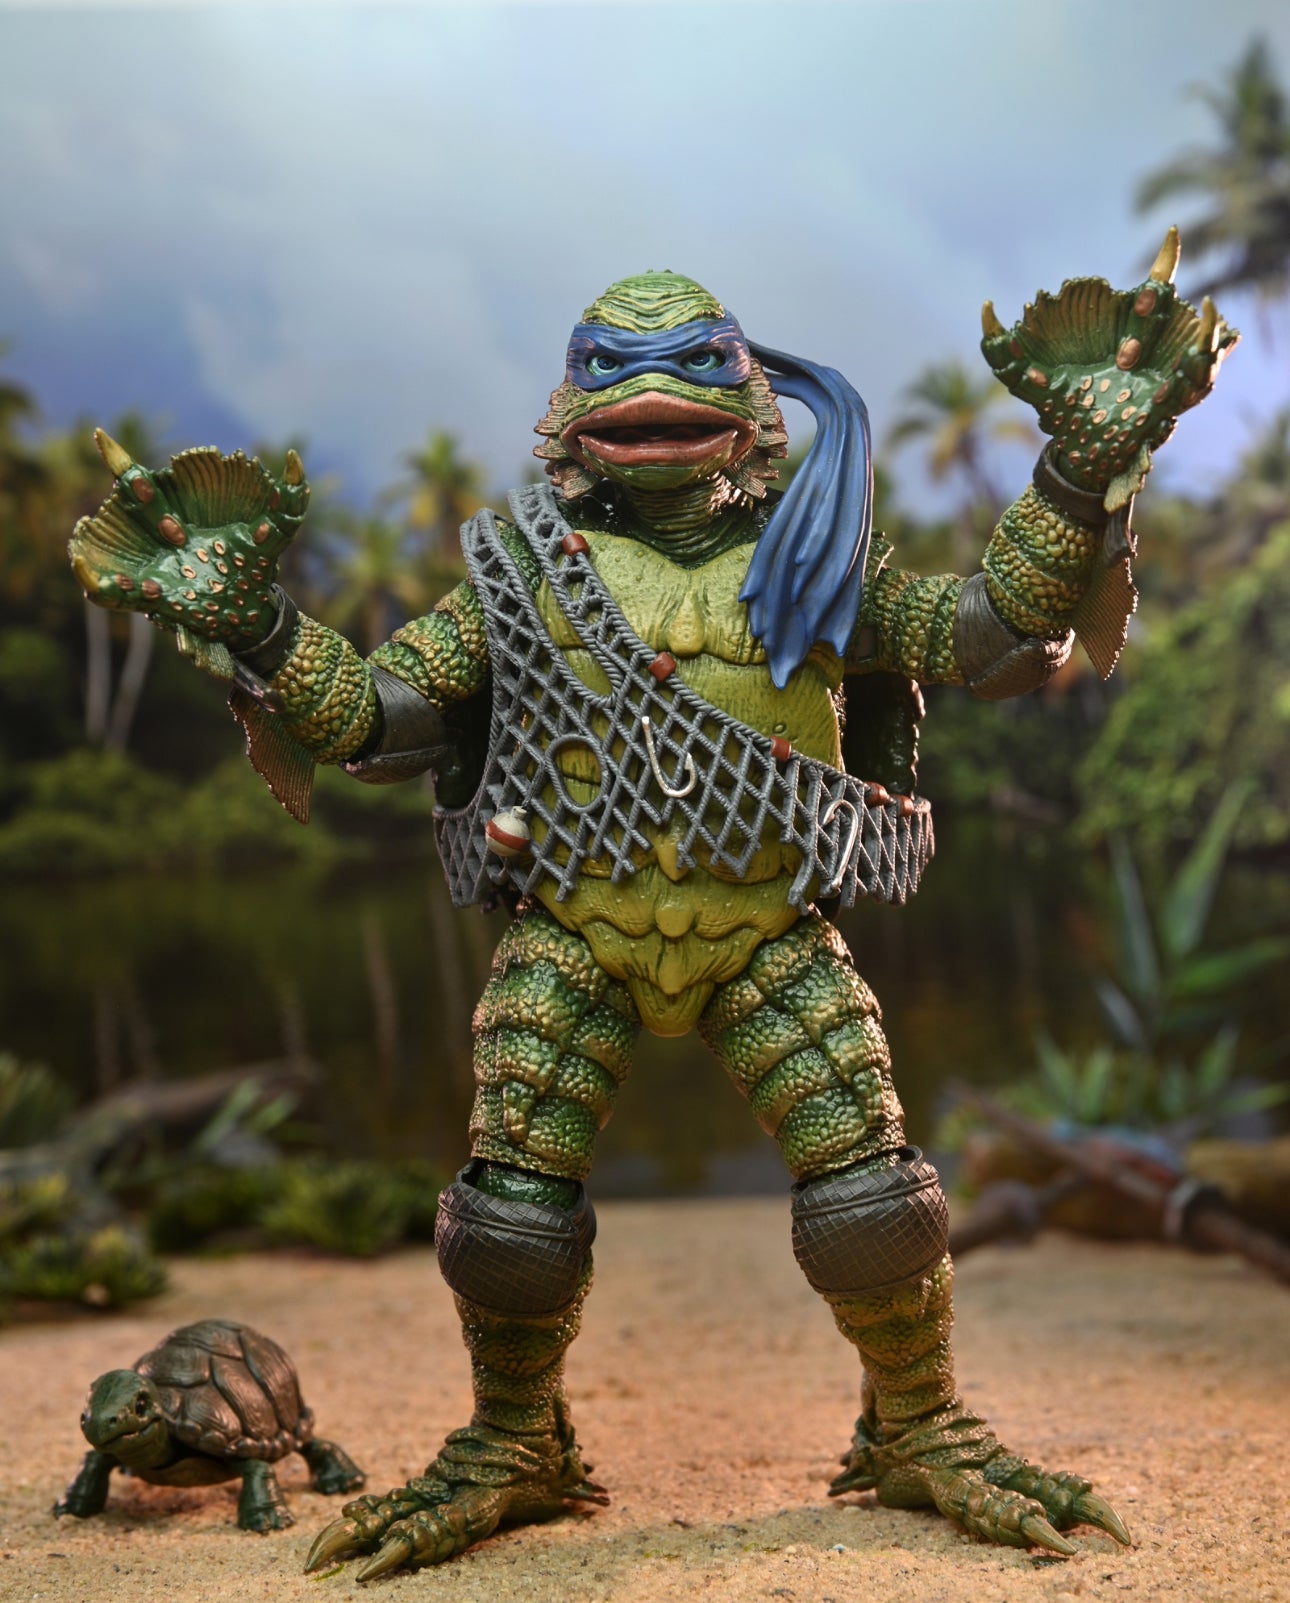 NECA Universal Monsters/Teenage Mutant Ninja Turtles Leonardo as the Creature 7” Action Figure